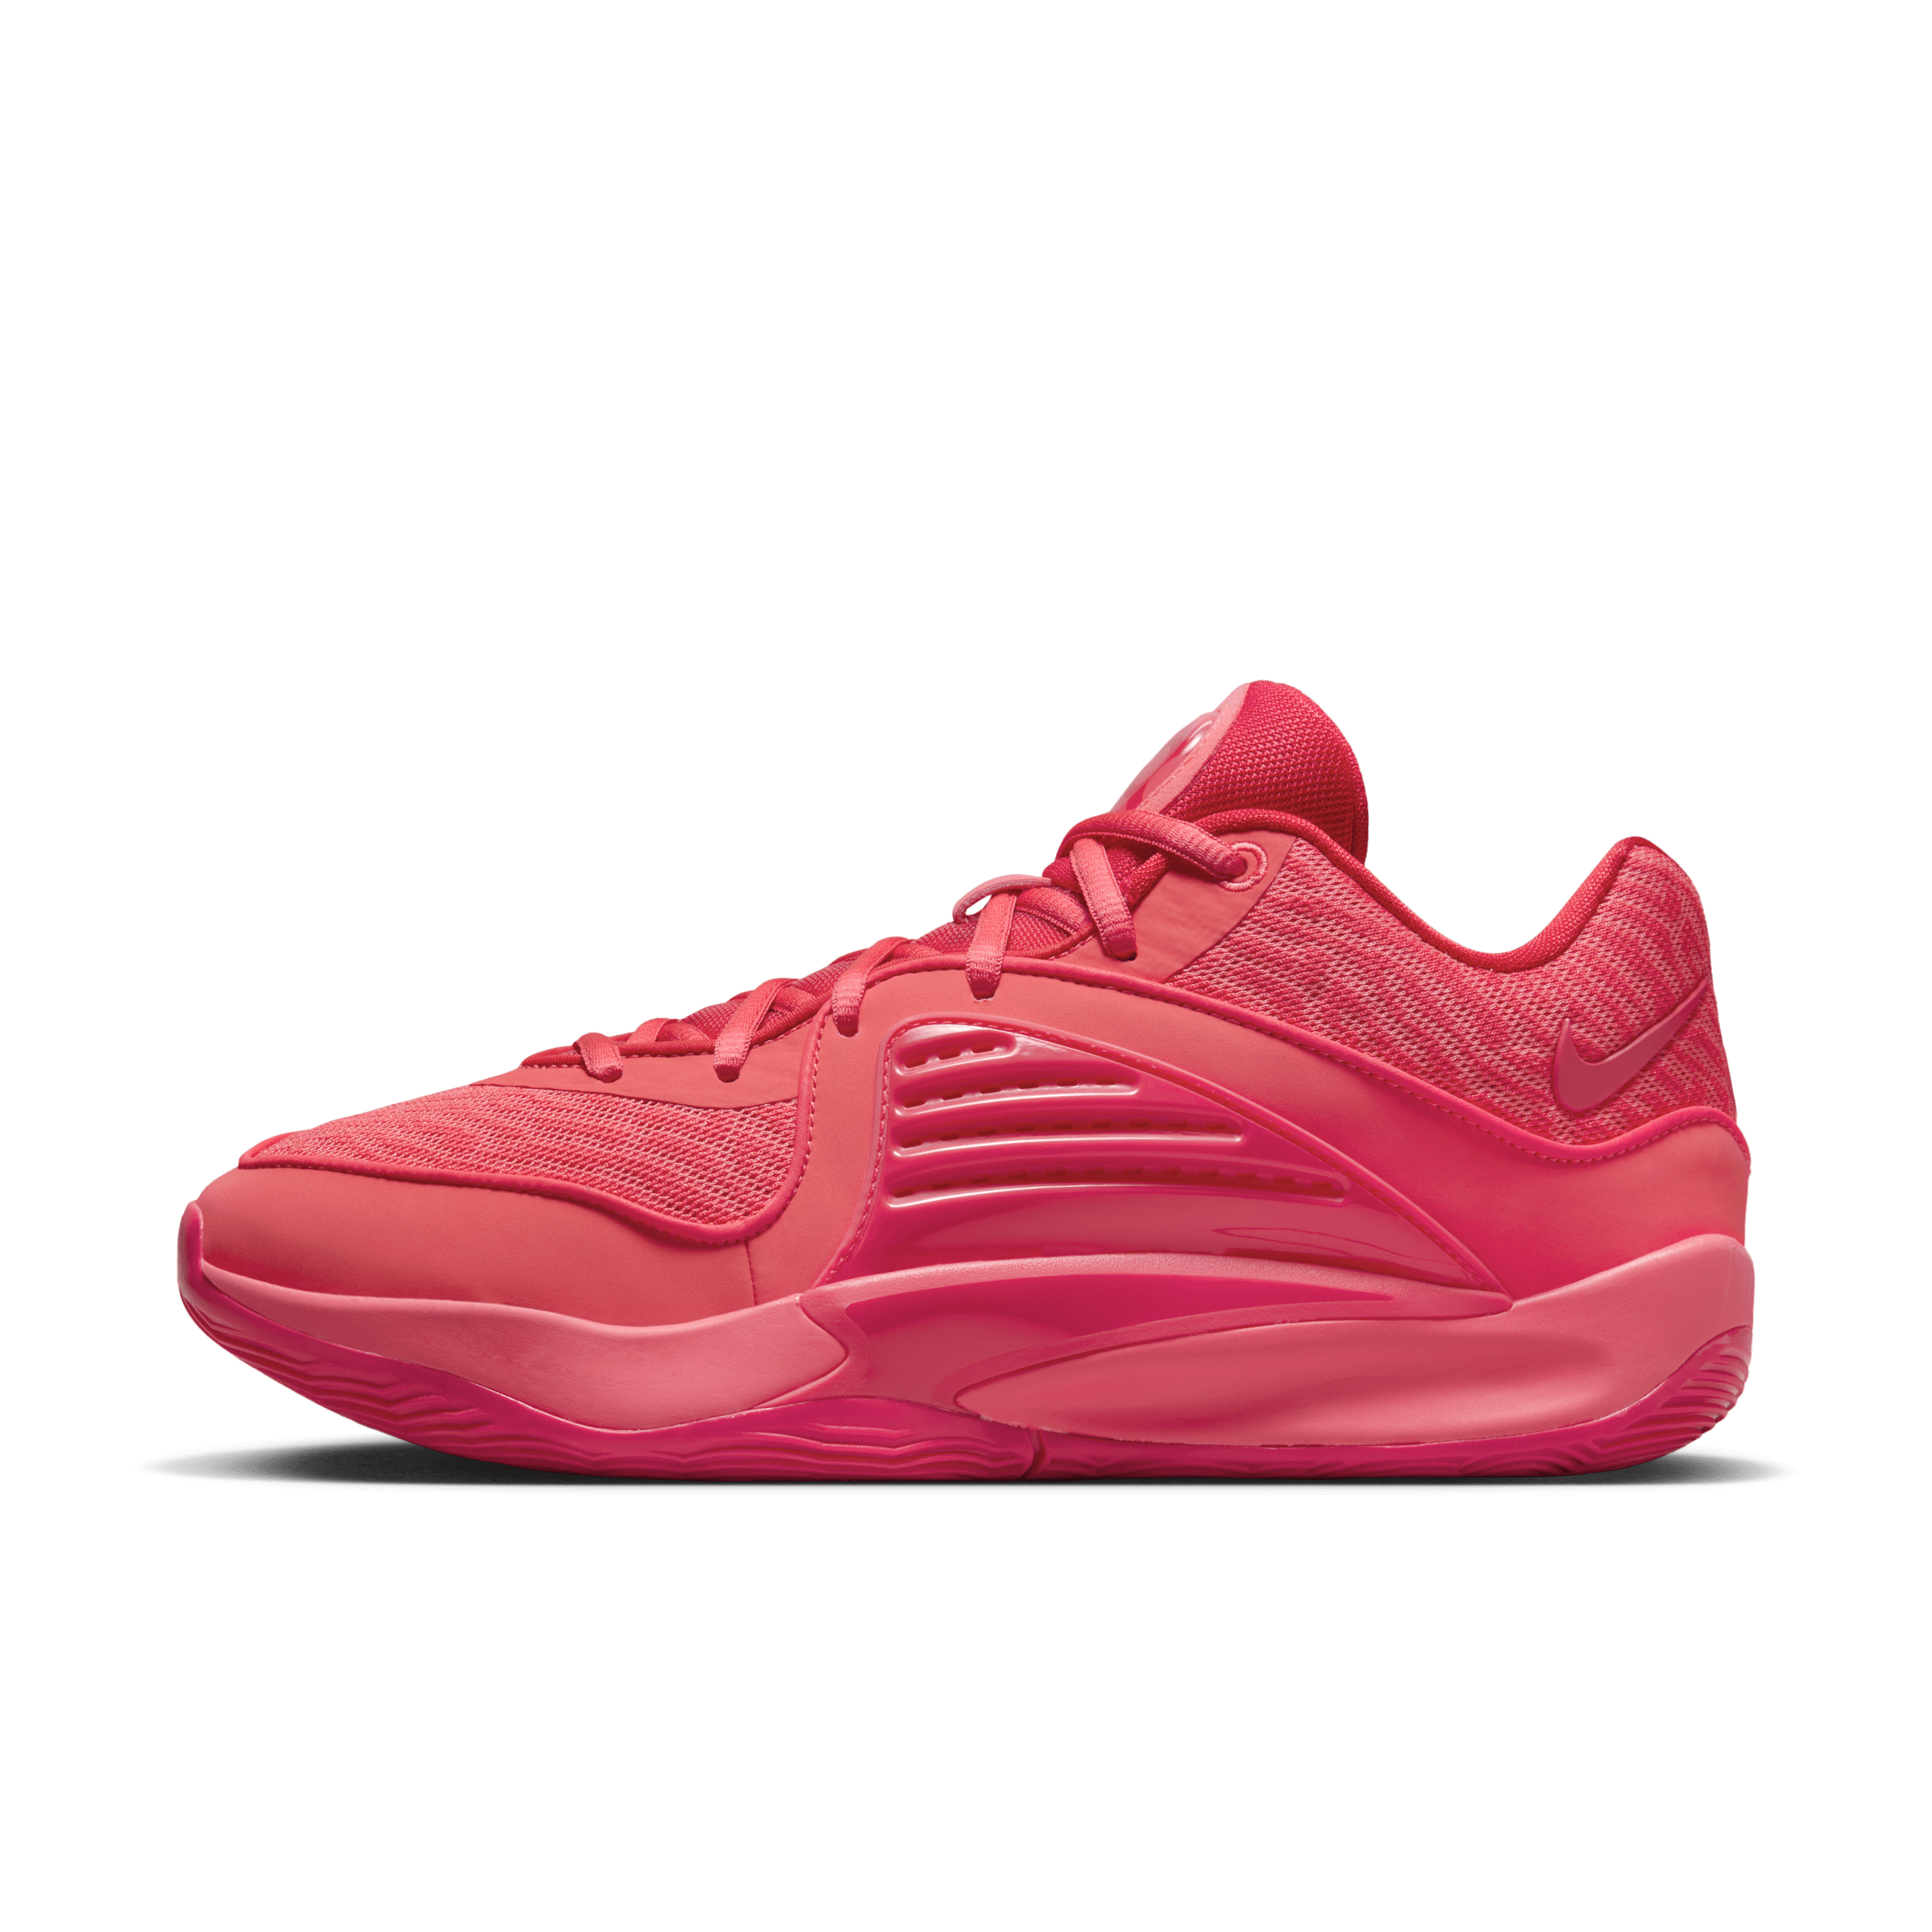 Nike KD16 basketbalschoen - Rood